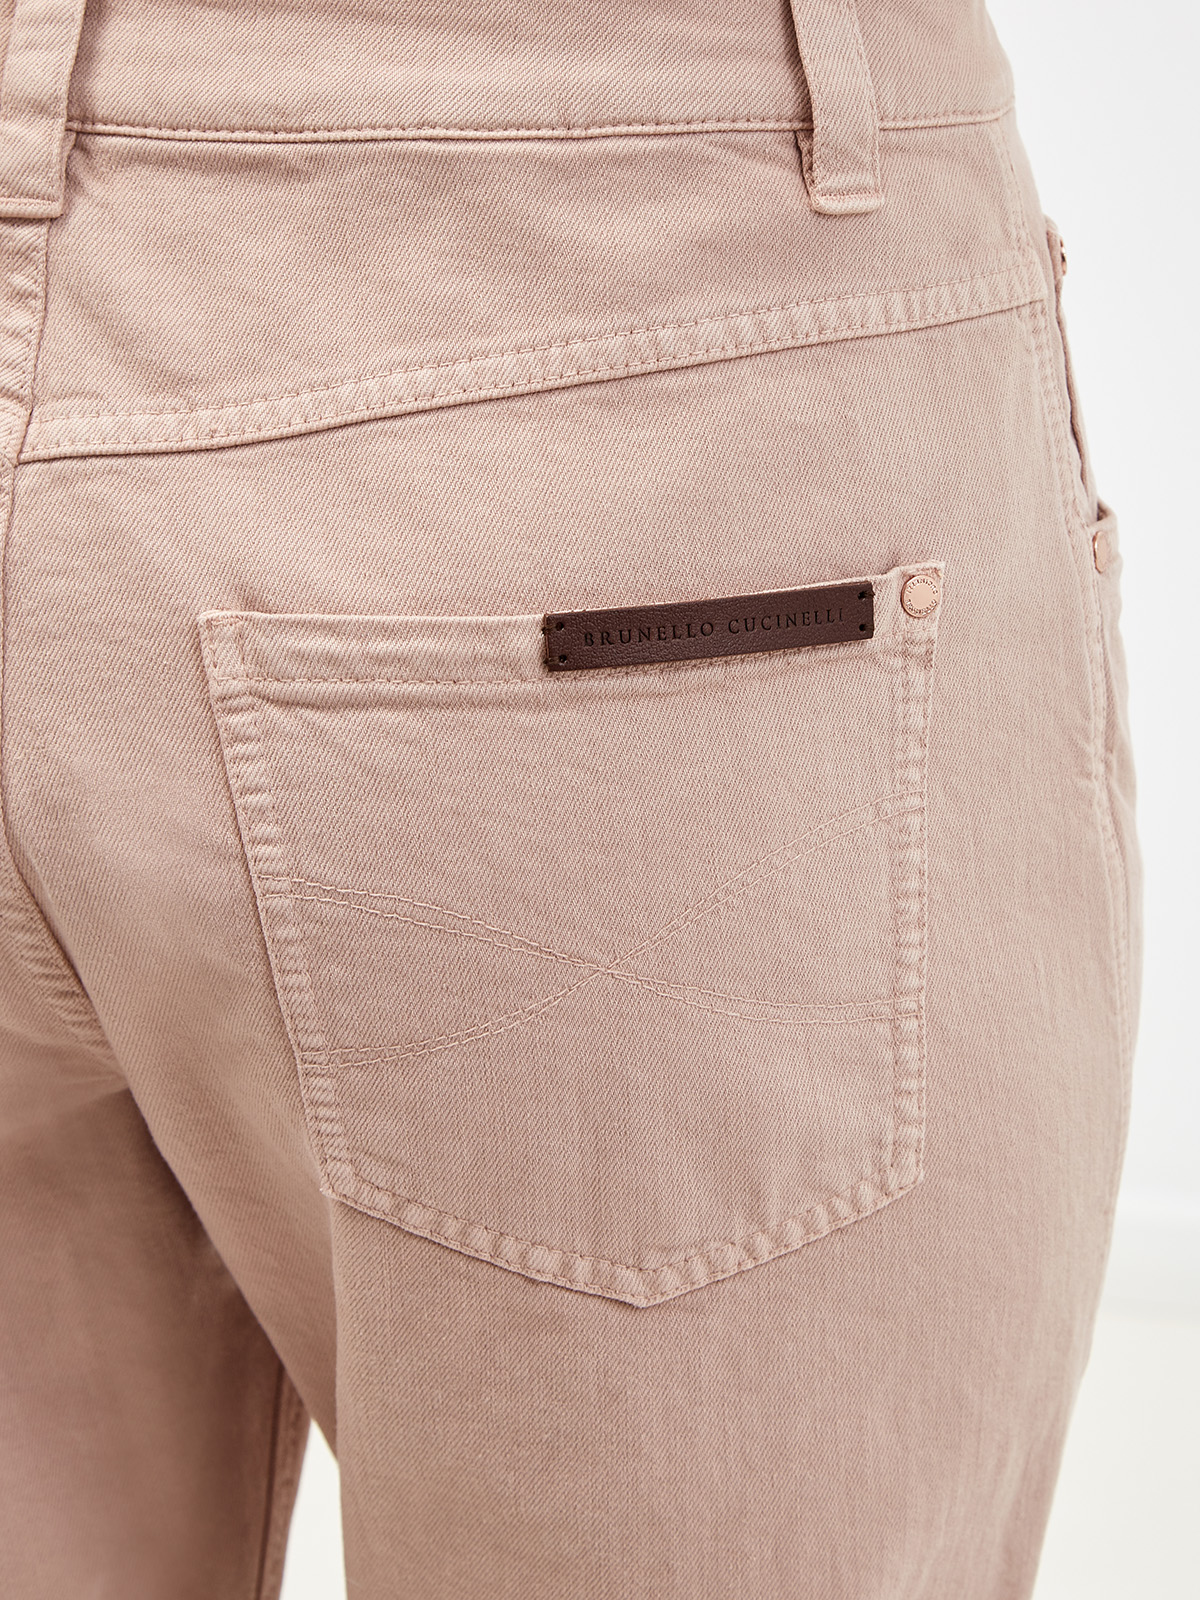 Высокие джинсы из окрашенного вручную денима BRUNELLO CUCINELLI, цвет розовый, размер 42;44 - фото 4